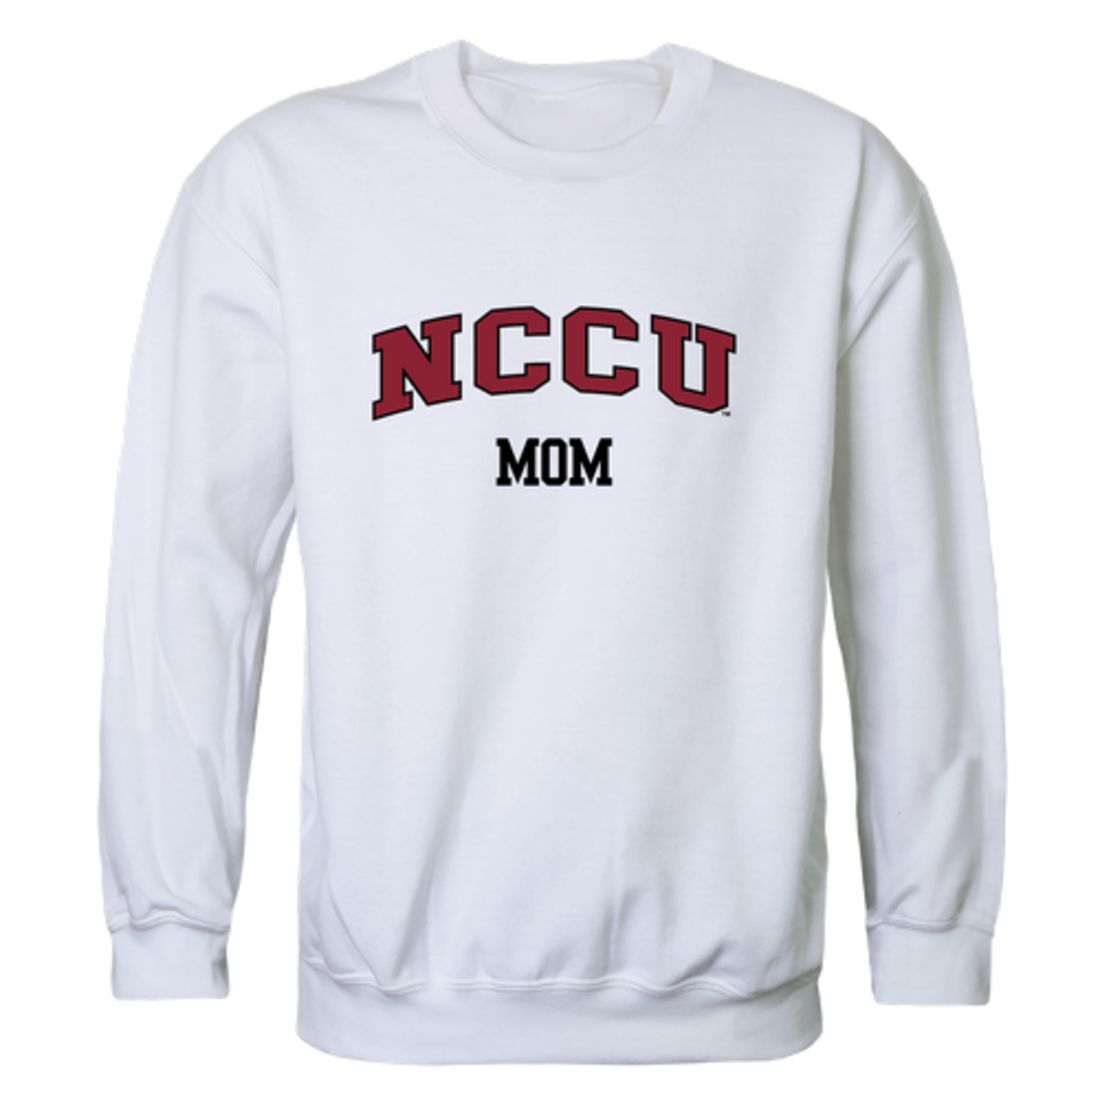 NCCU North Carolina Central University Eagles Mom Fleece Crewneck Pullover Sweatshirt Heather Grey Small-Campus-Wardrobe